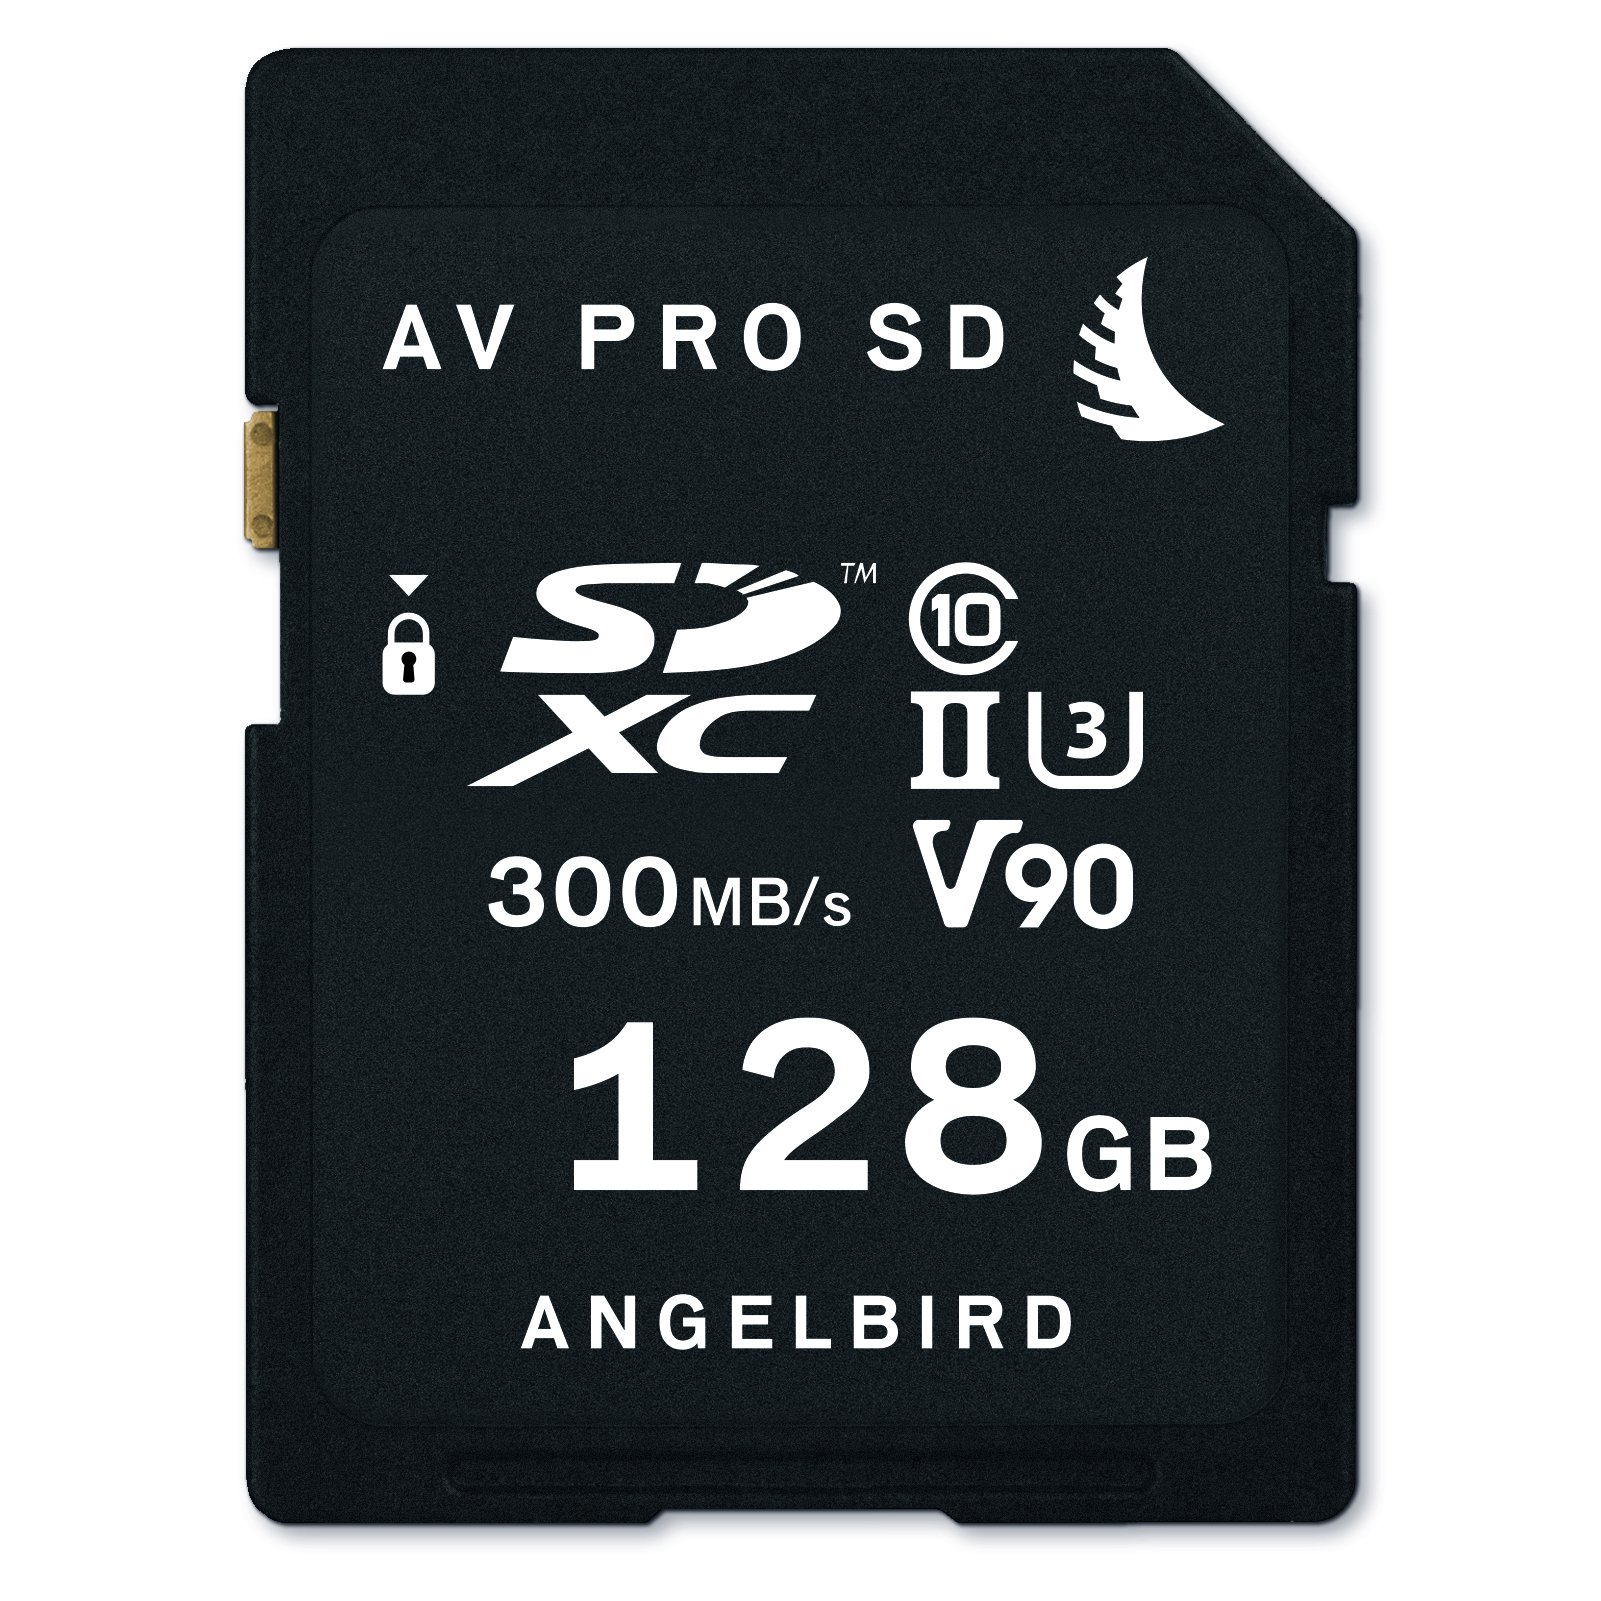 Angelbird AV PRO SDXC Speicherkarte - 128 GB [UHS-II, Class 10, U3 Standard | bis zu 300MB/s Lese- und 260MB/s Schreibgeschwindigkeit] - AVP128SD